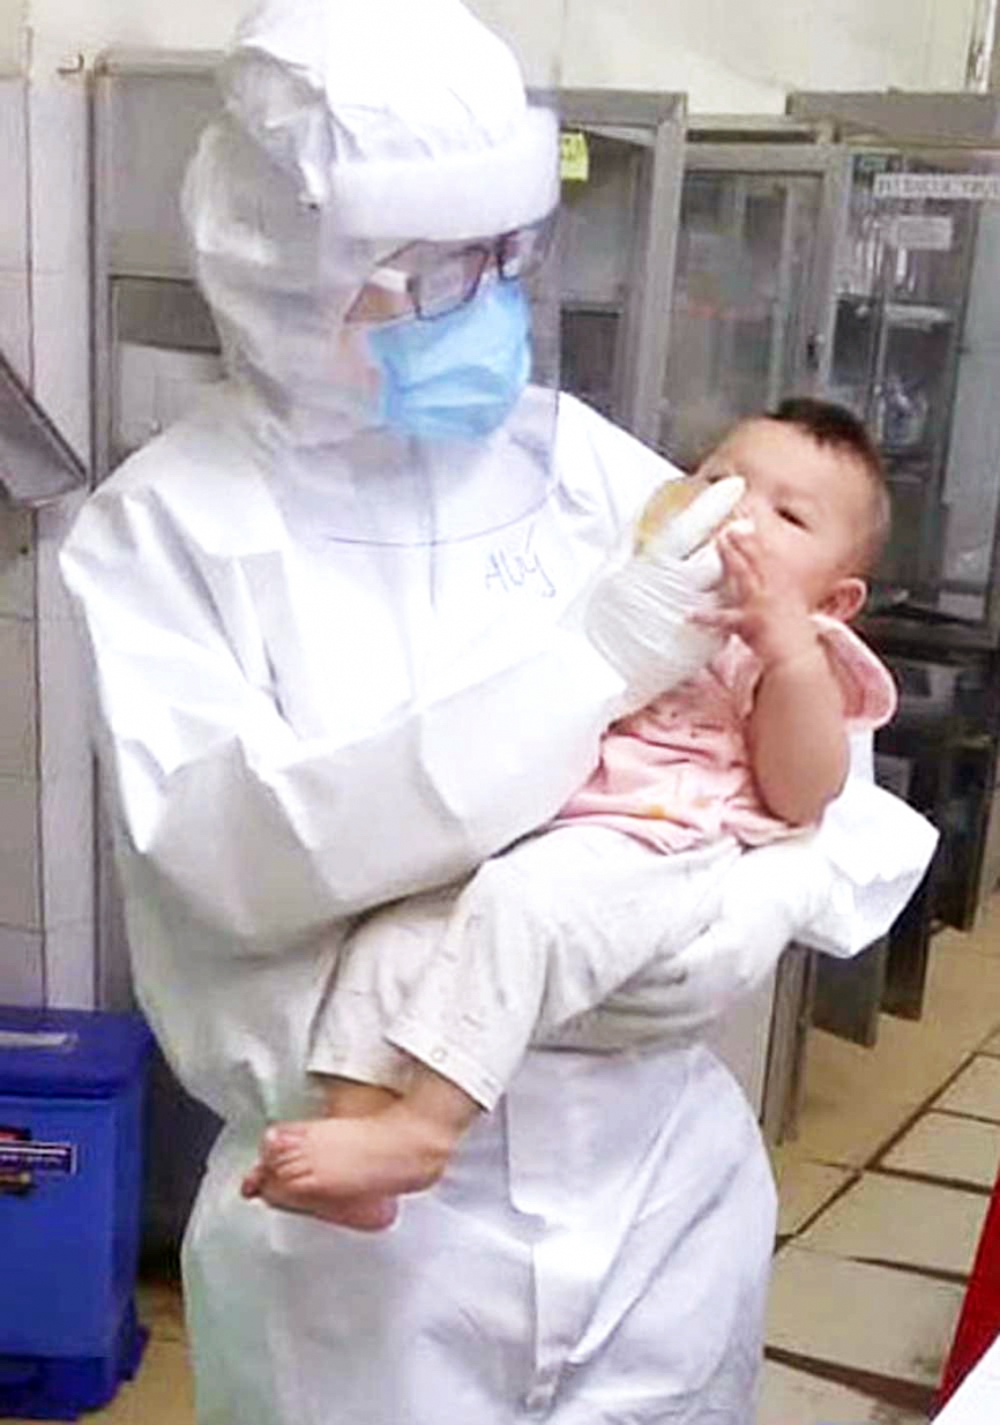 Bác sĩ Bệnh viện Trưng Vương chăm sóc em bé bảy tháng tuổi mắc COVID-19. Nhiều kẻ xấu đã lợi dụng câu chuyện của bé để lừa đảo - Ảnh: Bệnh viện cung cấp